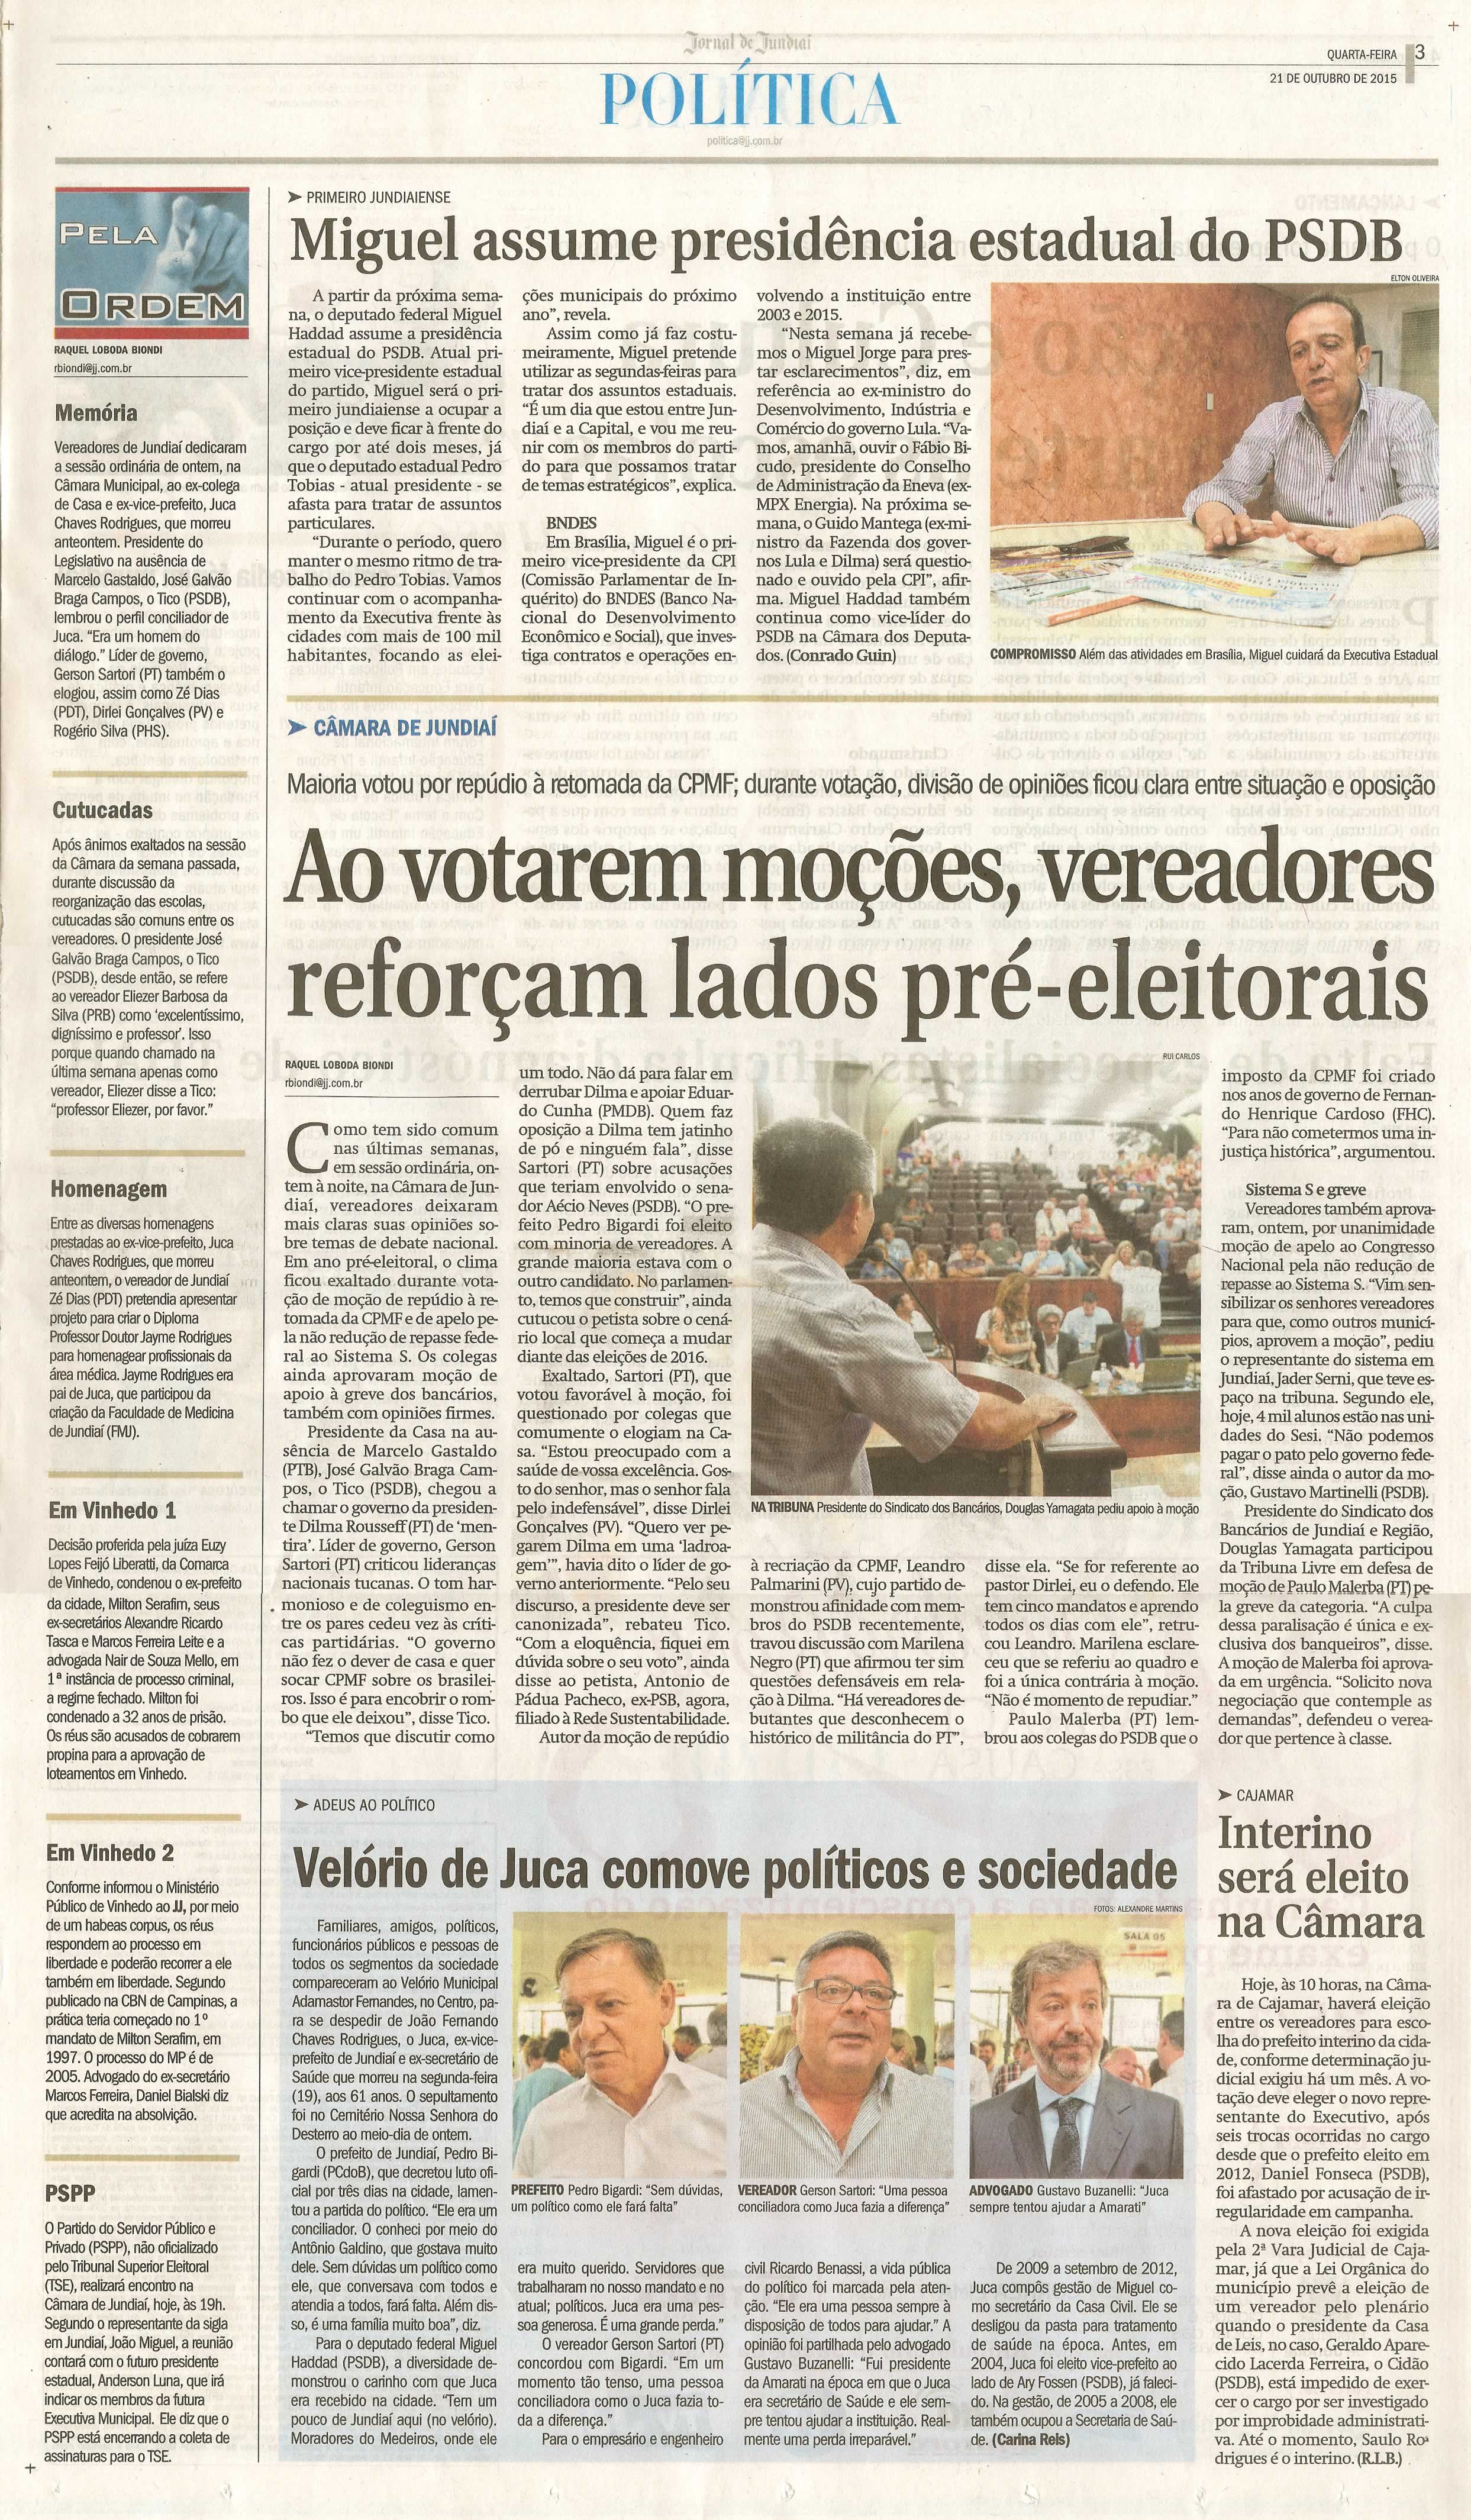 JJ - 21/10/15 - pg 3 - política - Miguel assume presidência estadula do PSDB - Ao votarem moções, vereadores reforçam lados pré-eleitorais -